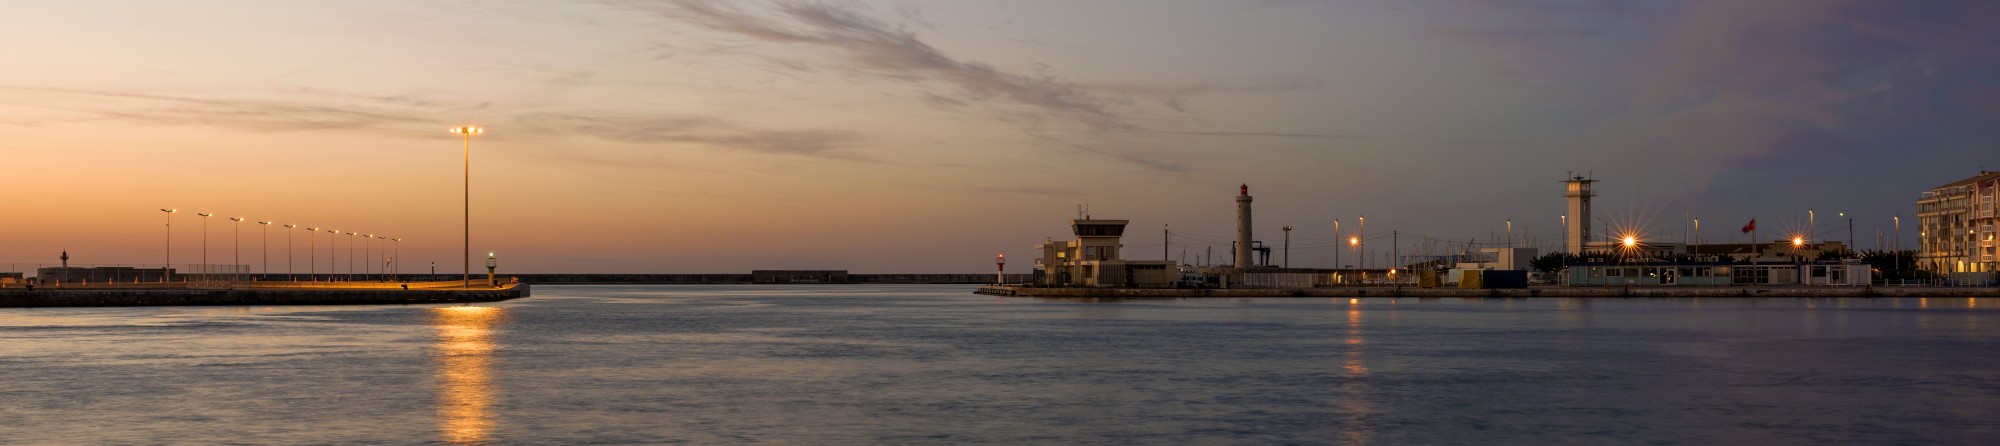 Sunrise at Sète Harbour 02